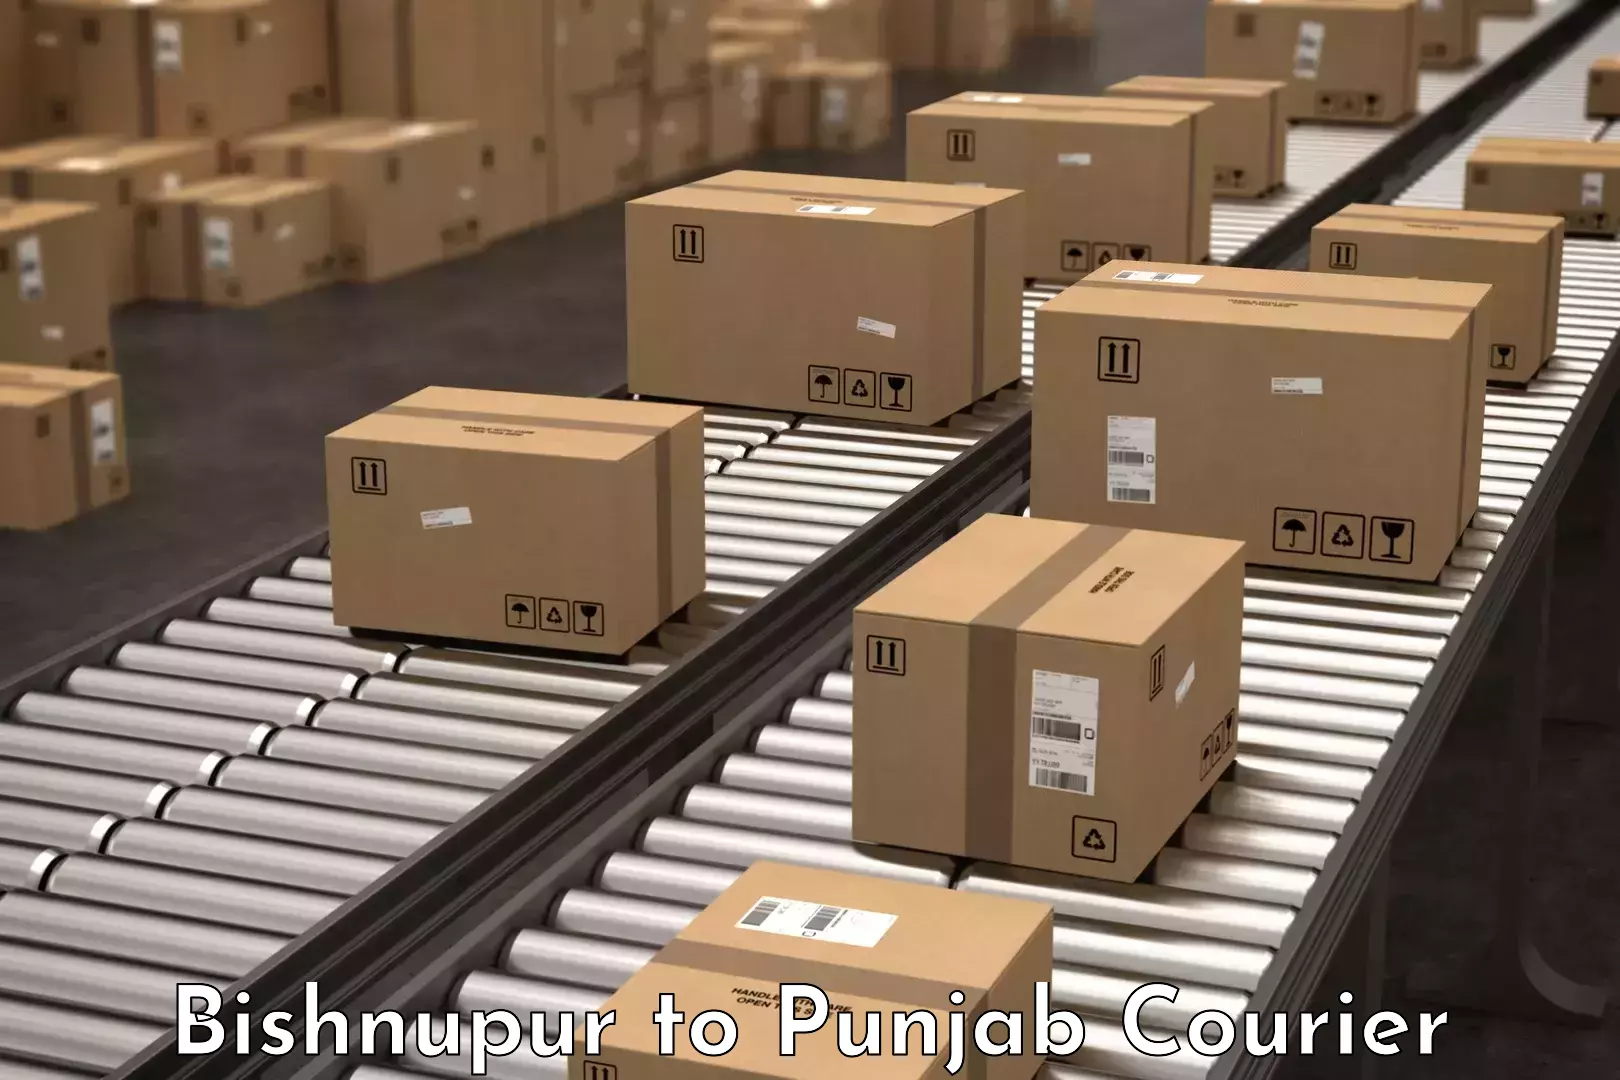 Professional packing services Bishnupur to Jalandhar